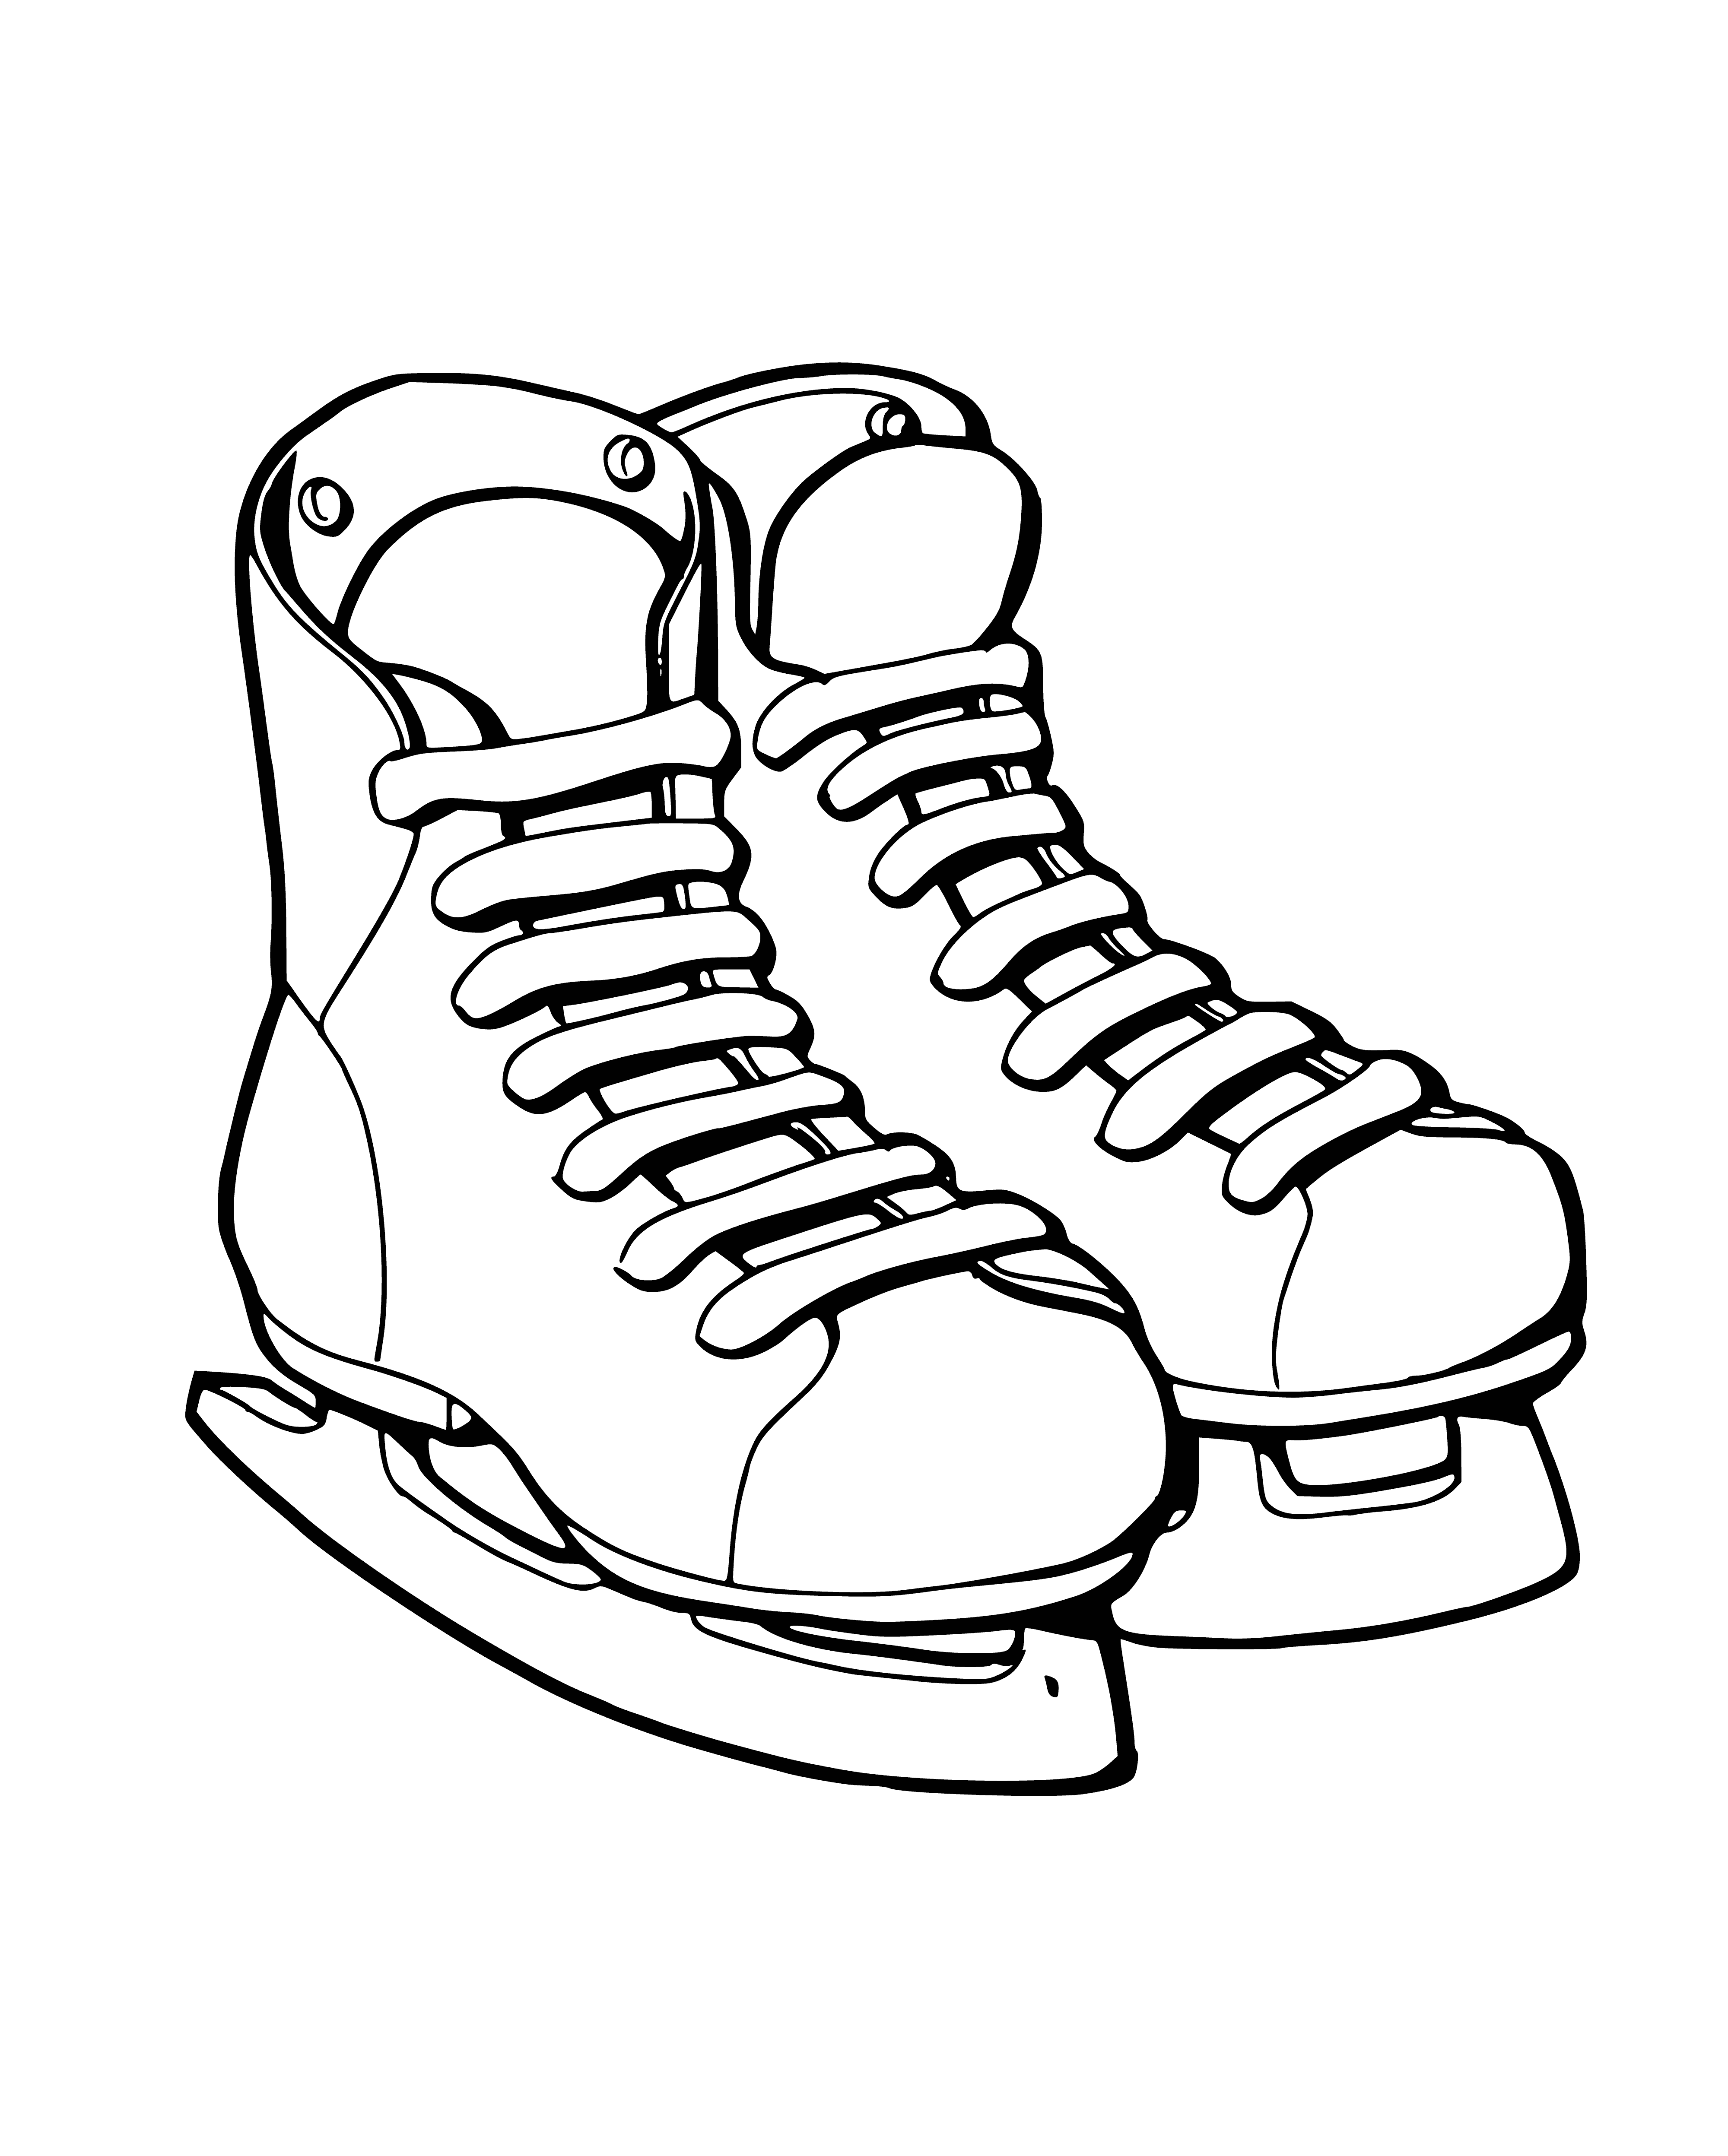 Hockey skates coloring page